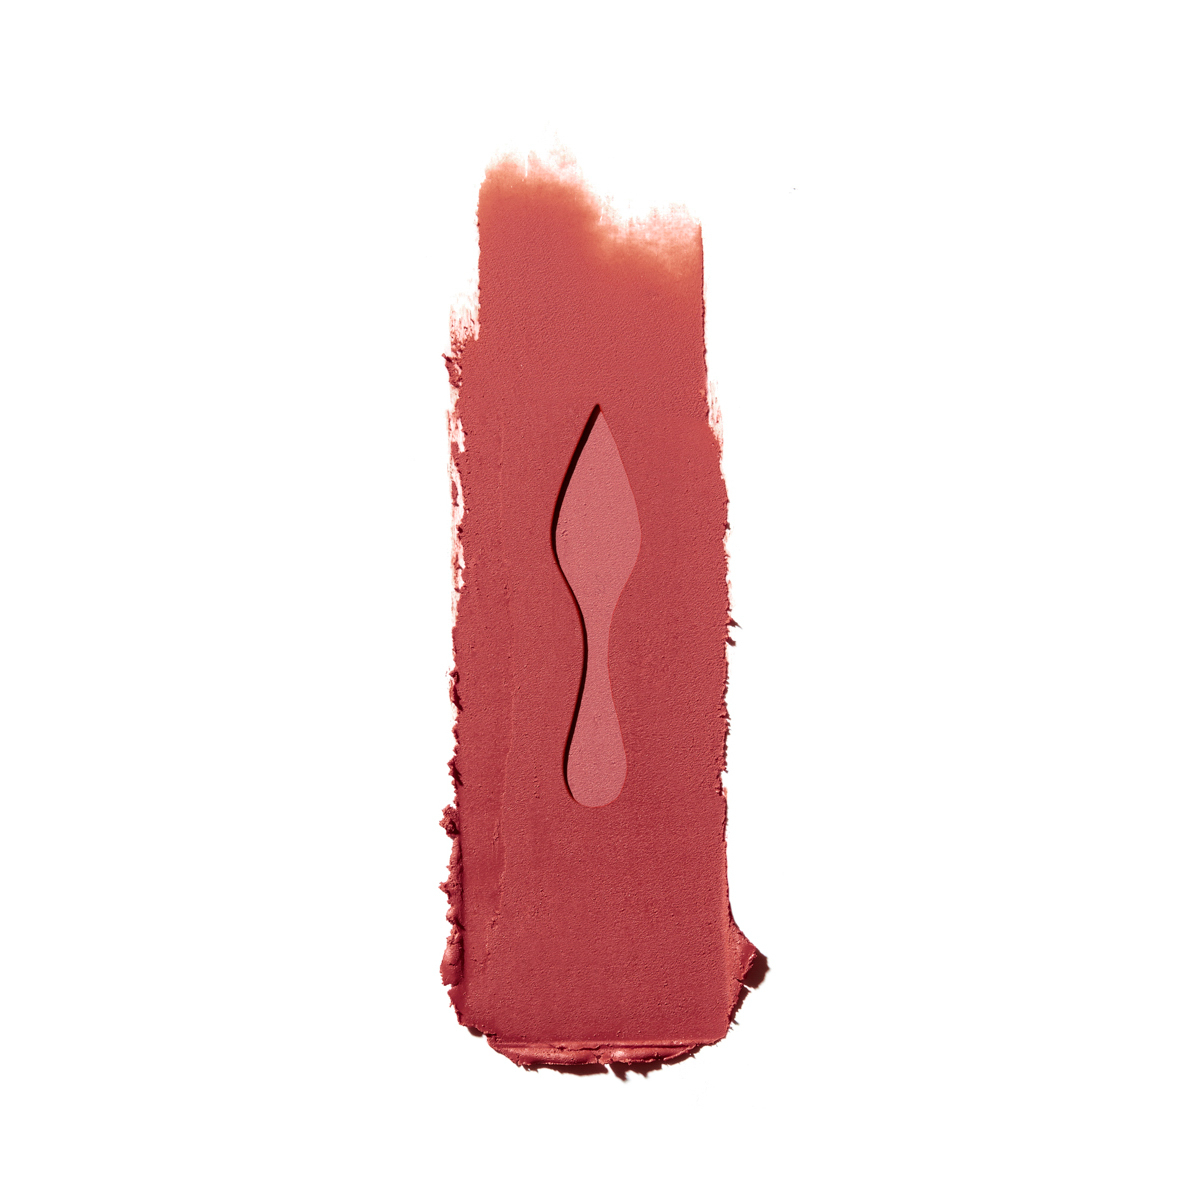 Christian Louboutin's Rouge Louboutin Velvet Matte Lipstick Is